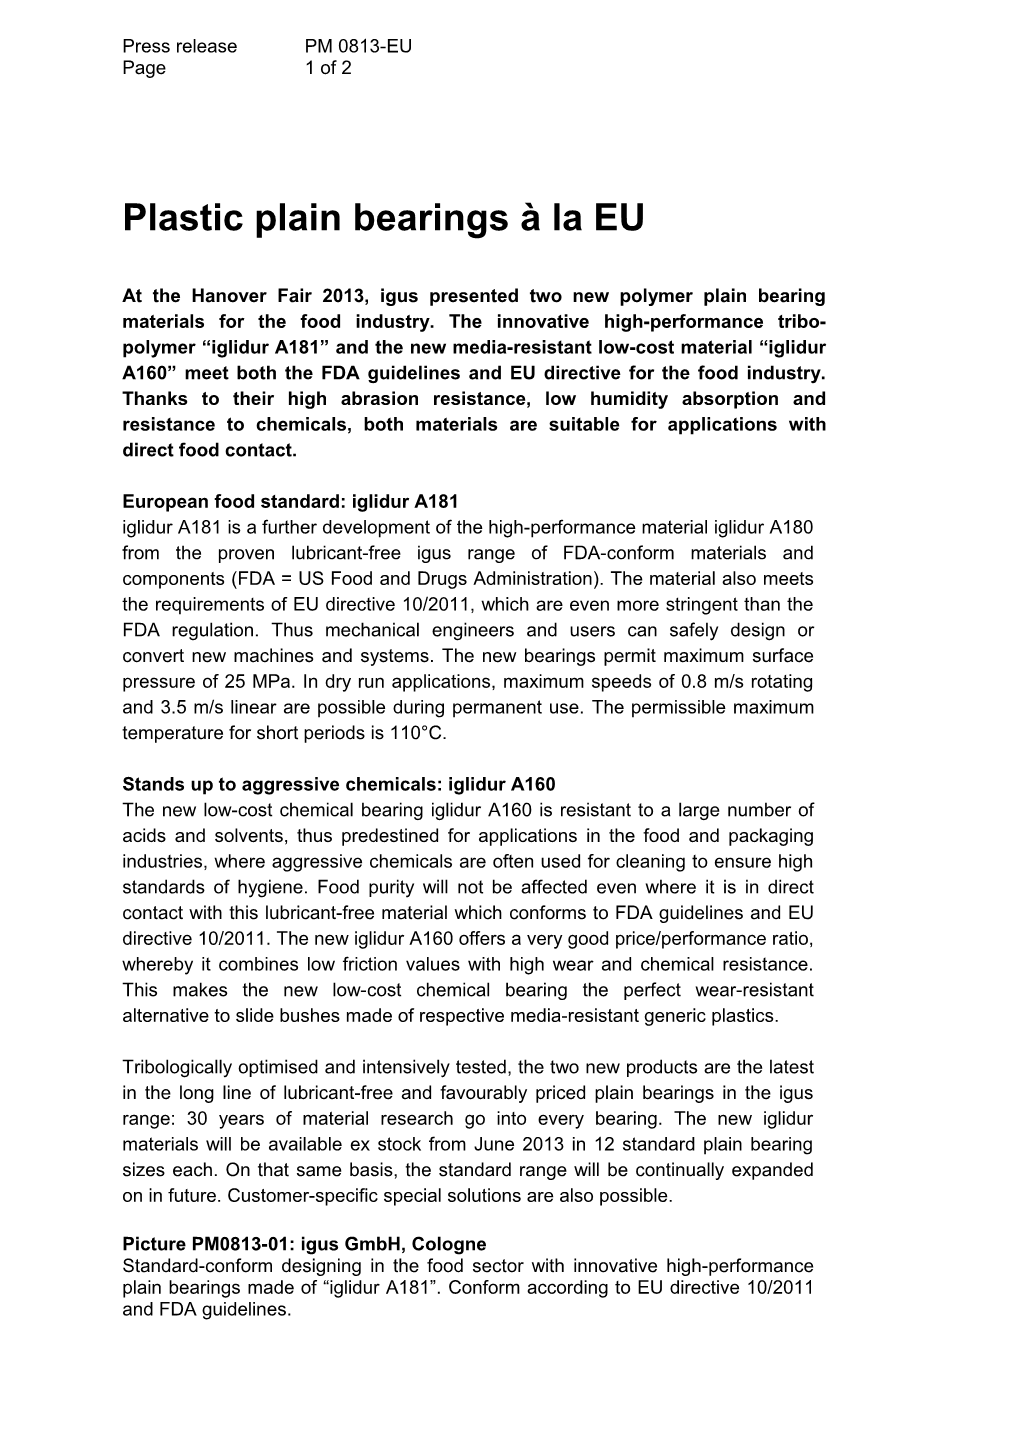 Plastic Plain Bearings À La EU